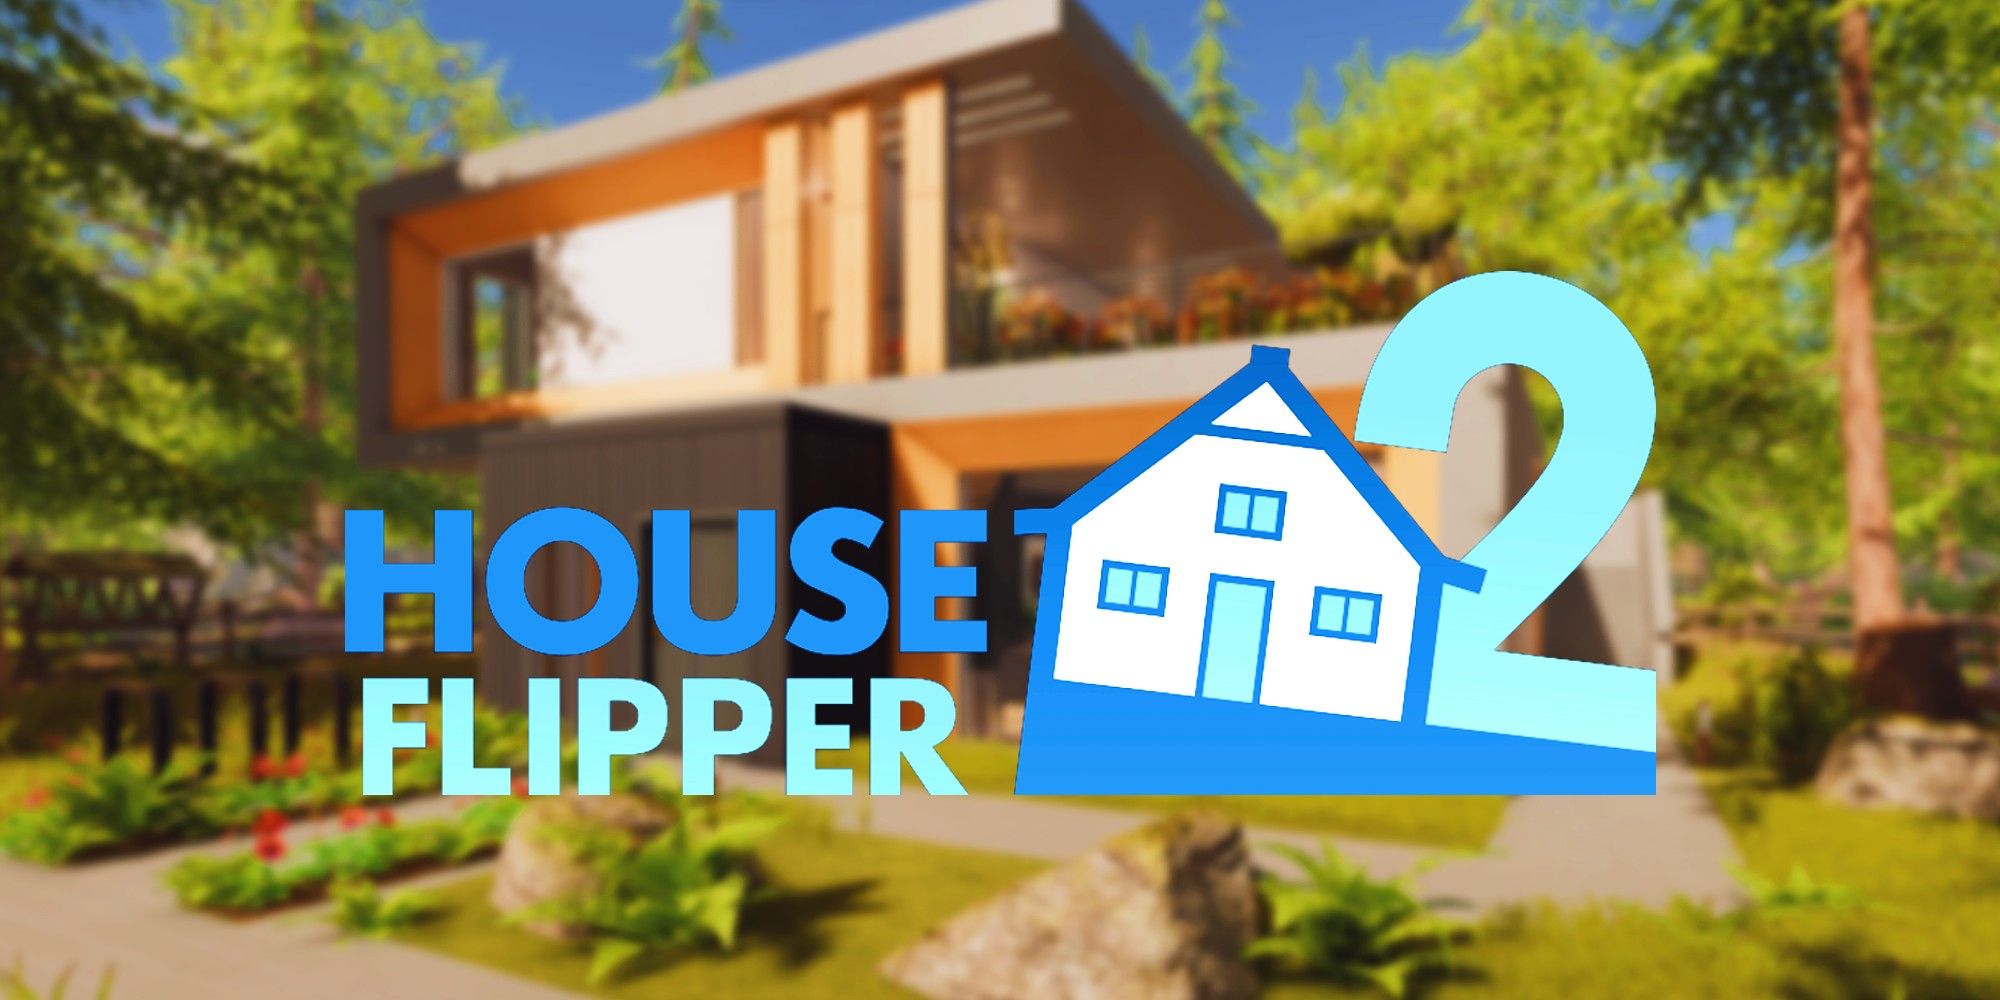 "Construido mejor que el original" - Revisión de House Flipper 2